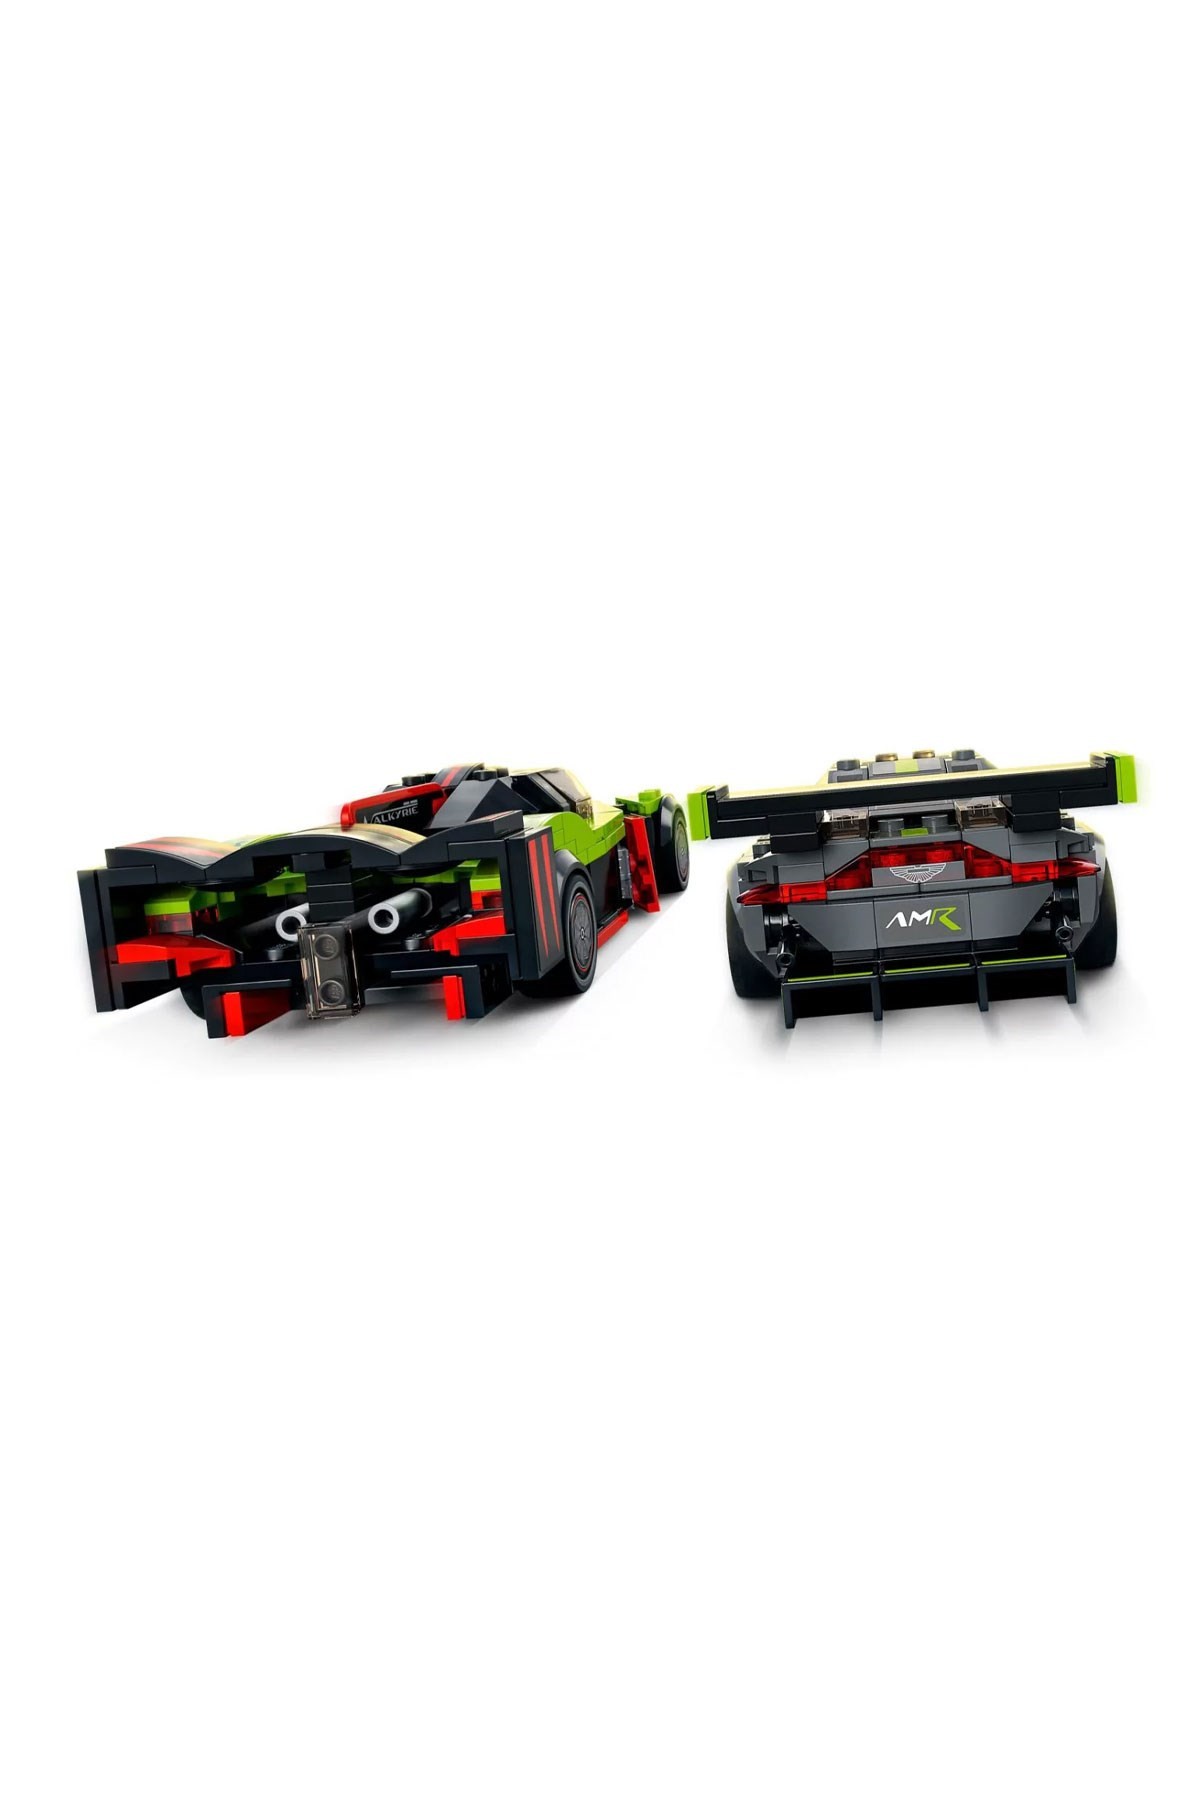 Lego Speed Champions Aston Martin Valkyrie AMR Pro ve Aston Martin Vantage GT3 76910